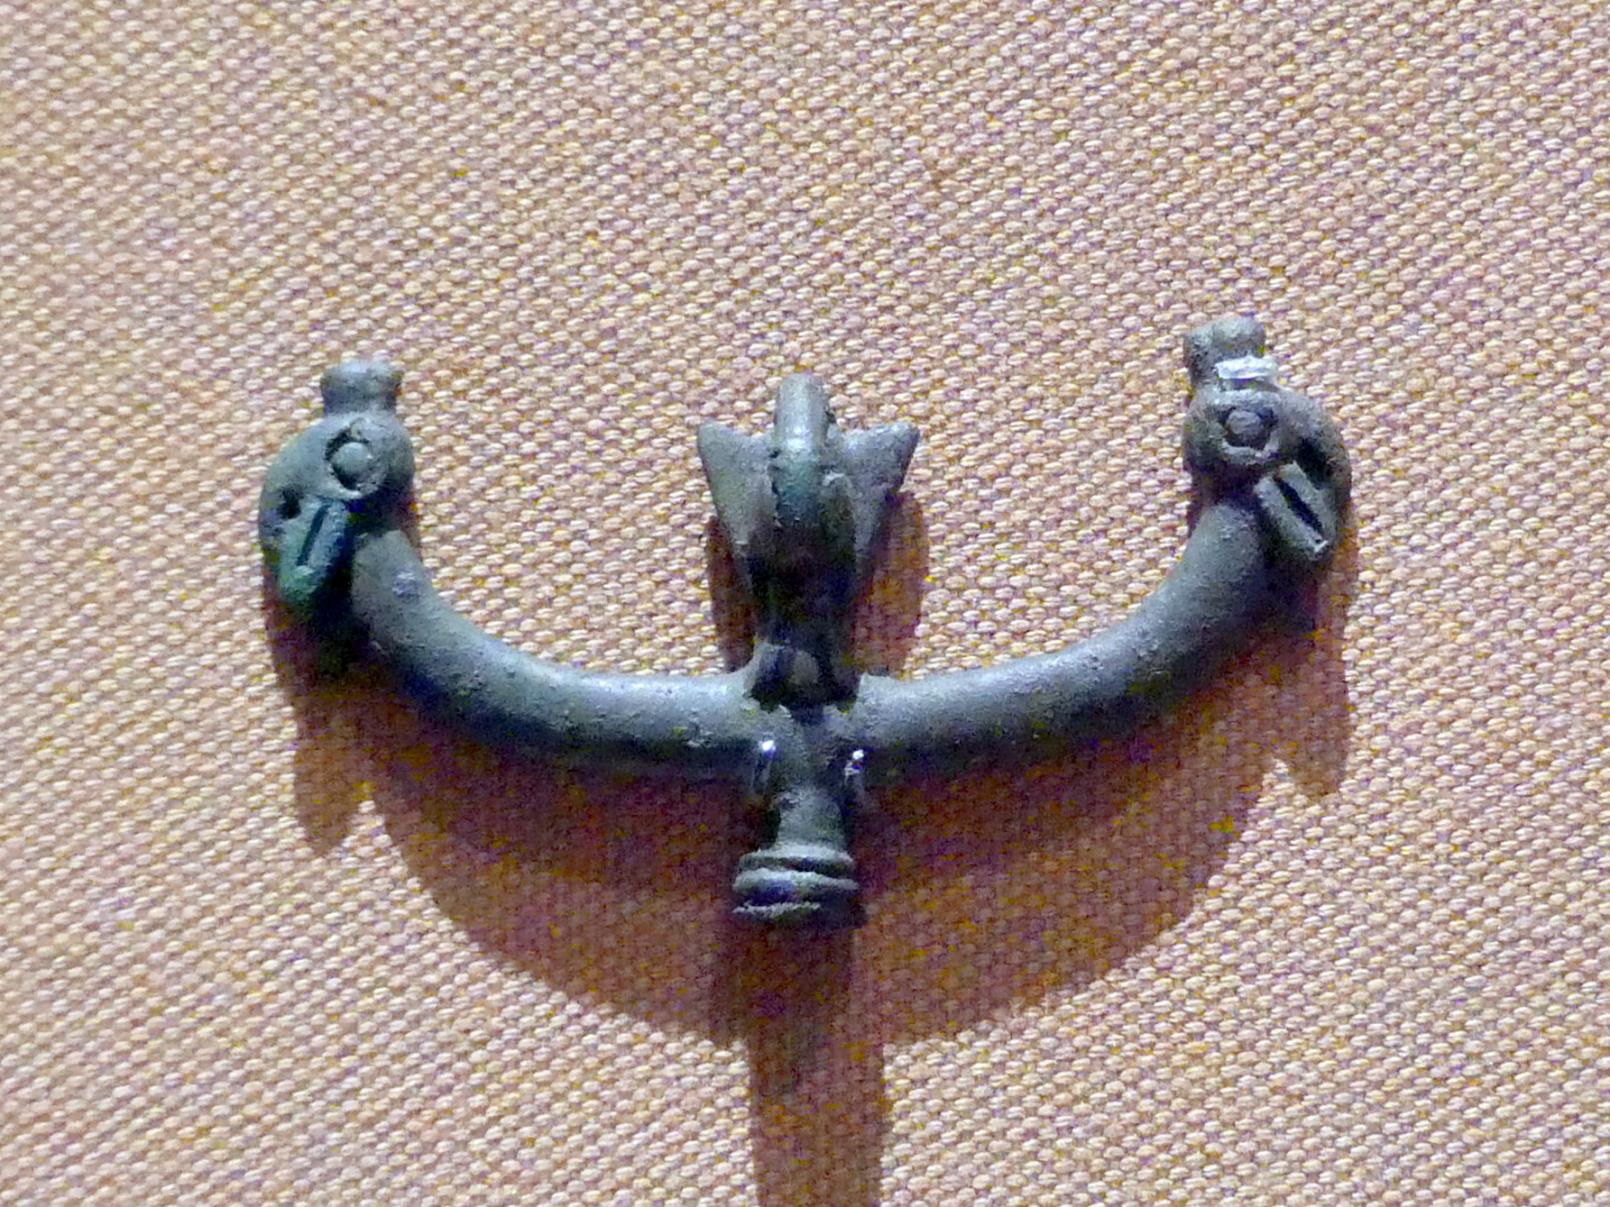 Nadelkopf in Form dreier Tierköpfe, Eisenzeit III, 800 - 600 v. Chr., 800 - 600 v. Chr., Bild 1/2